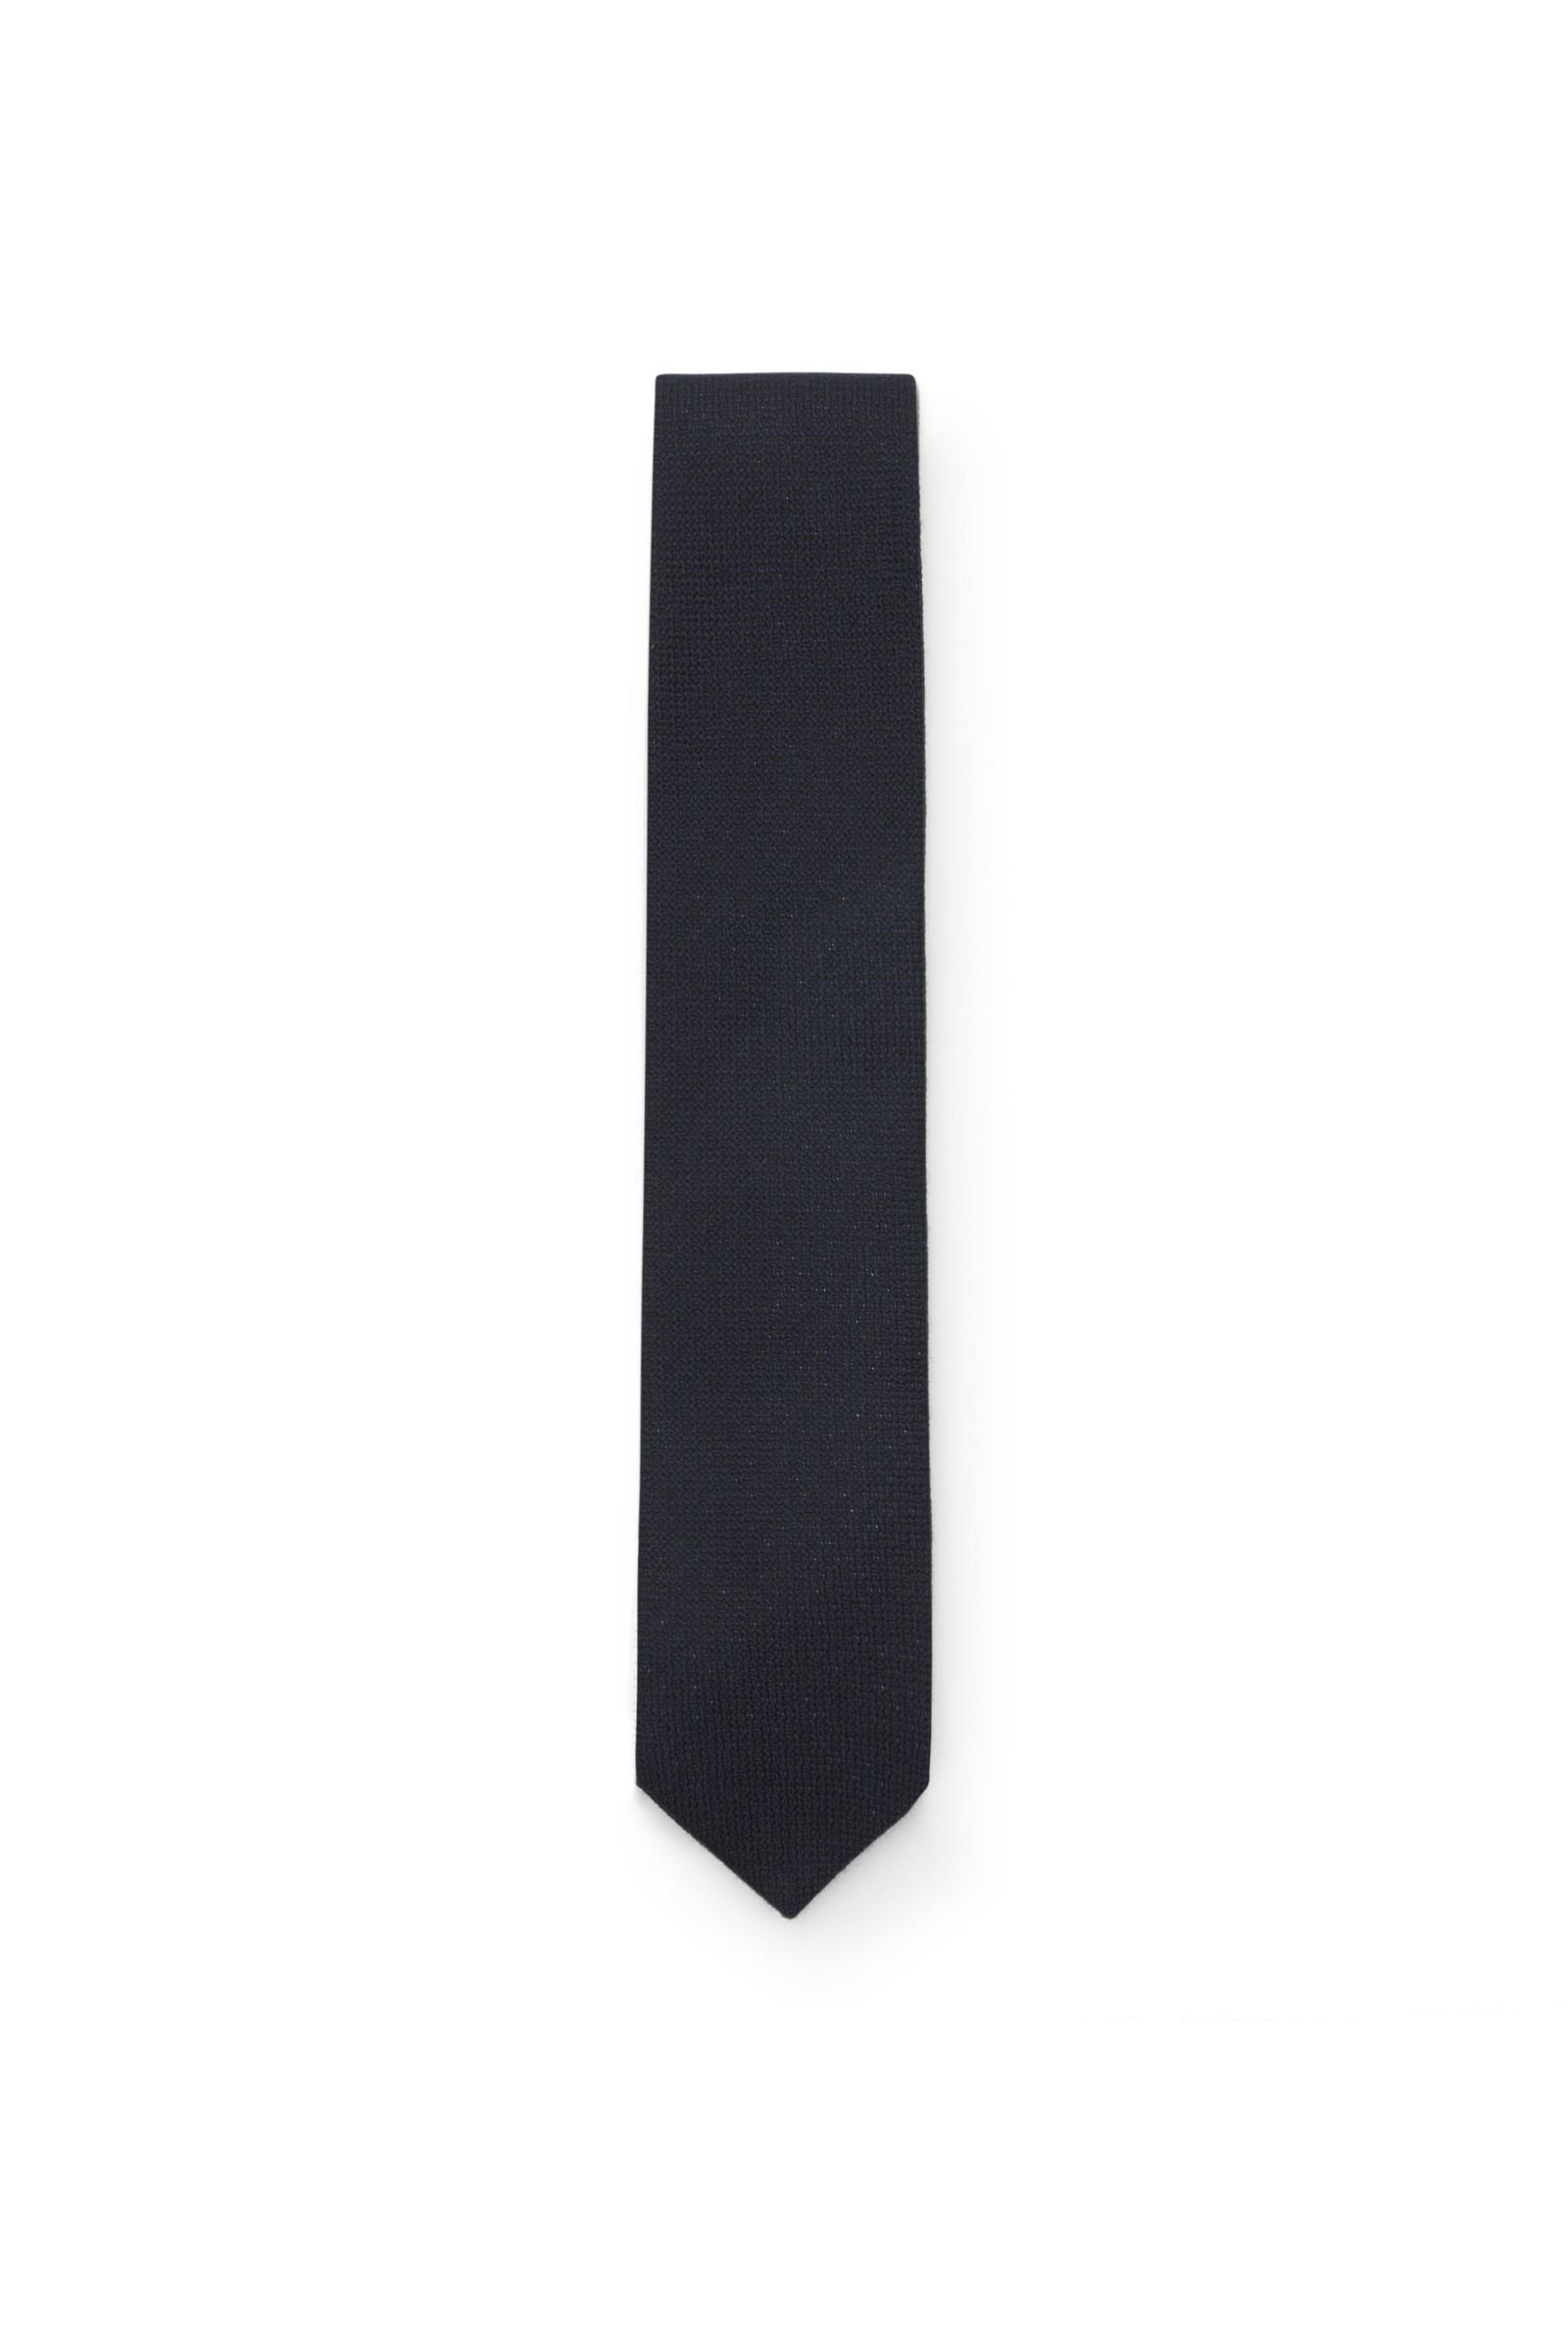 Cashmere tie dark navy